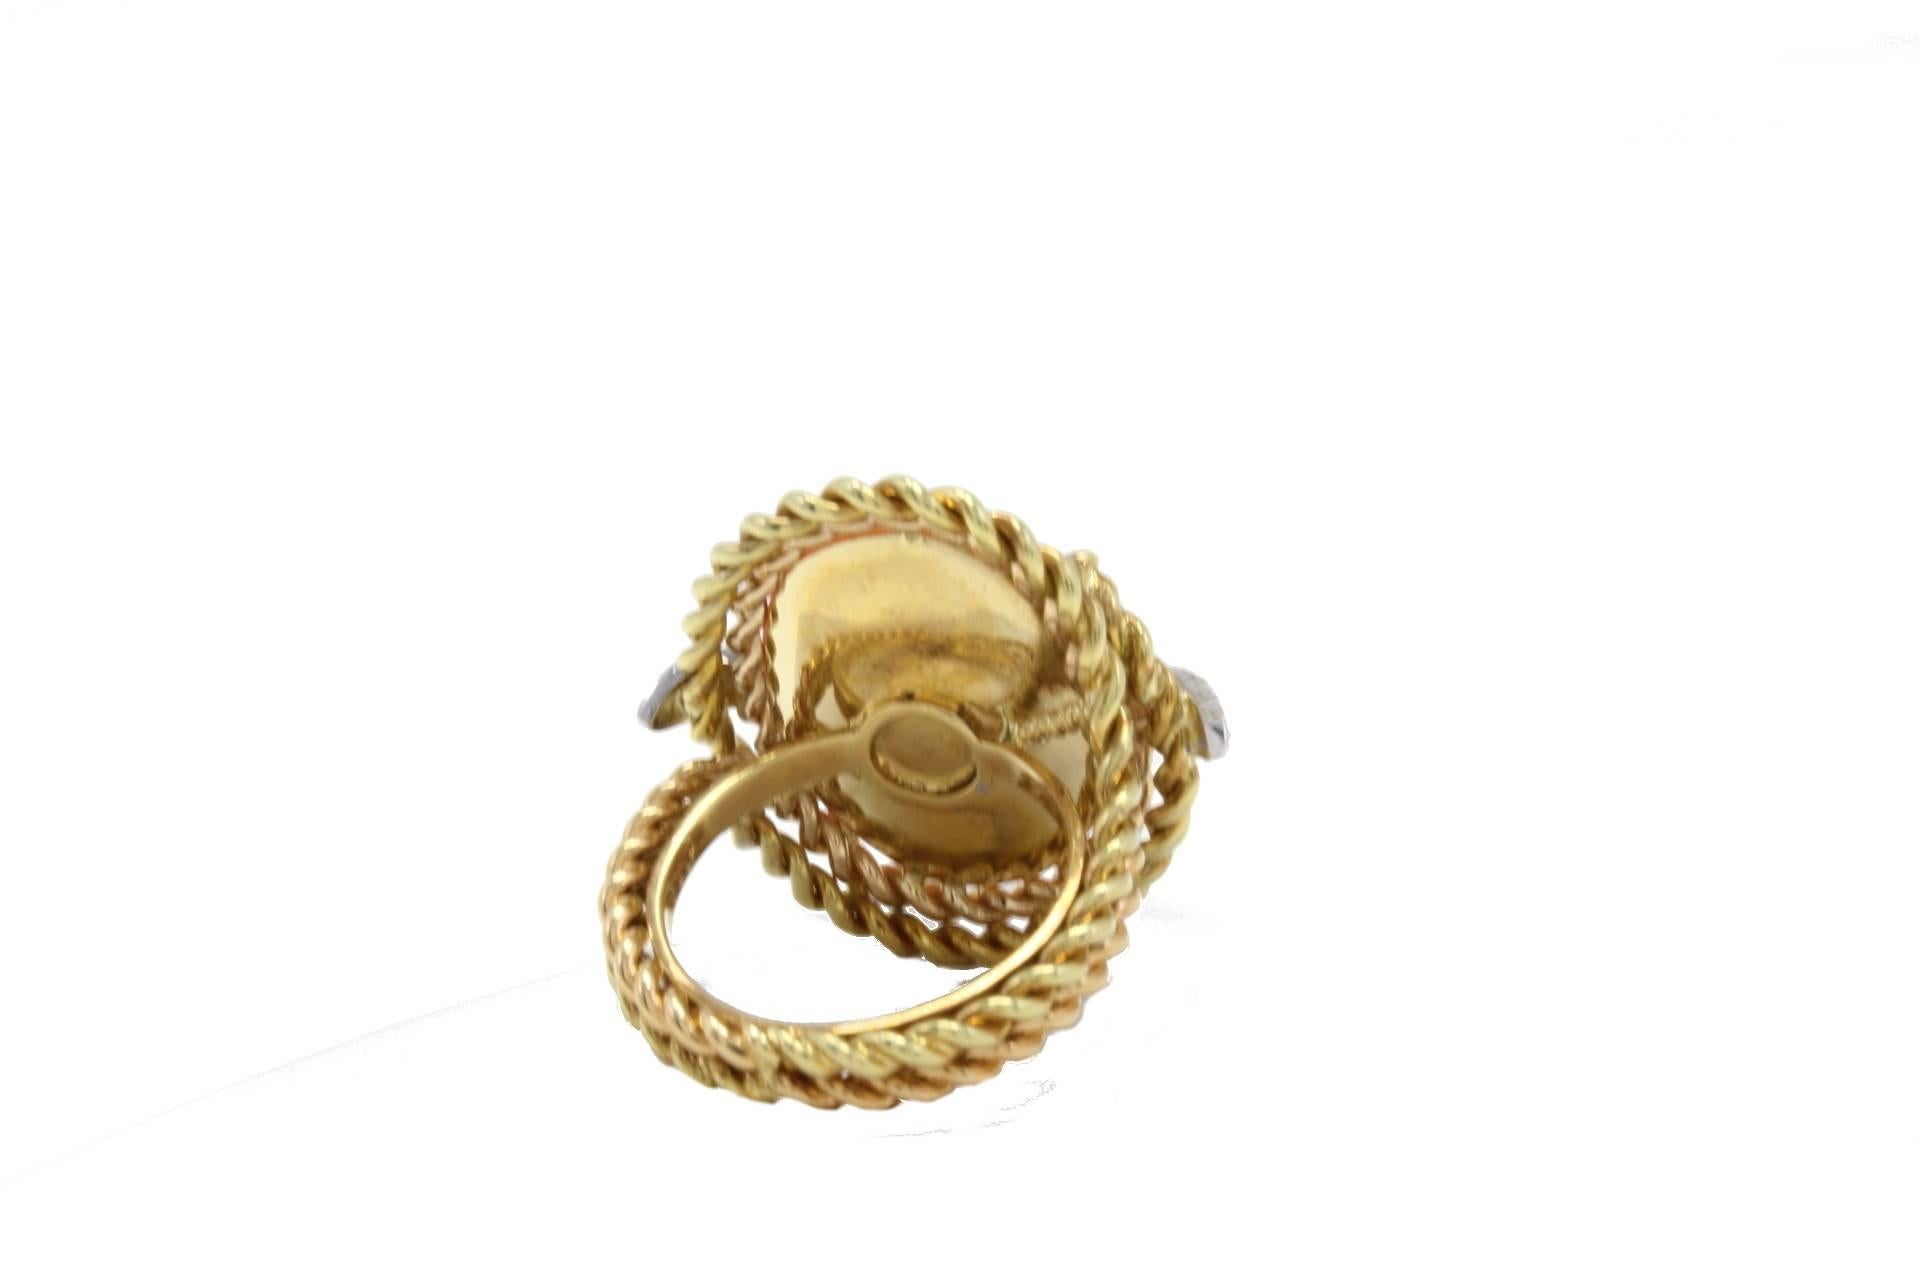 Brilliant Cut Orange Coral Button, Diamonds, 18K Yellow Gold Dome Ring For Sale